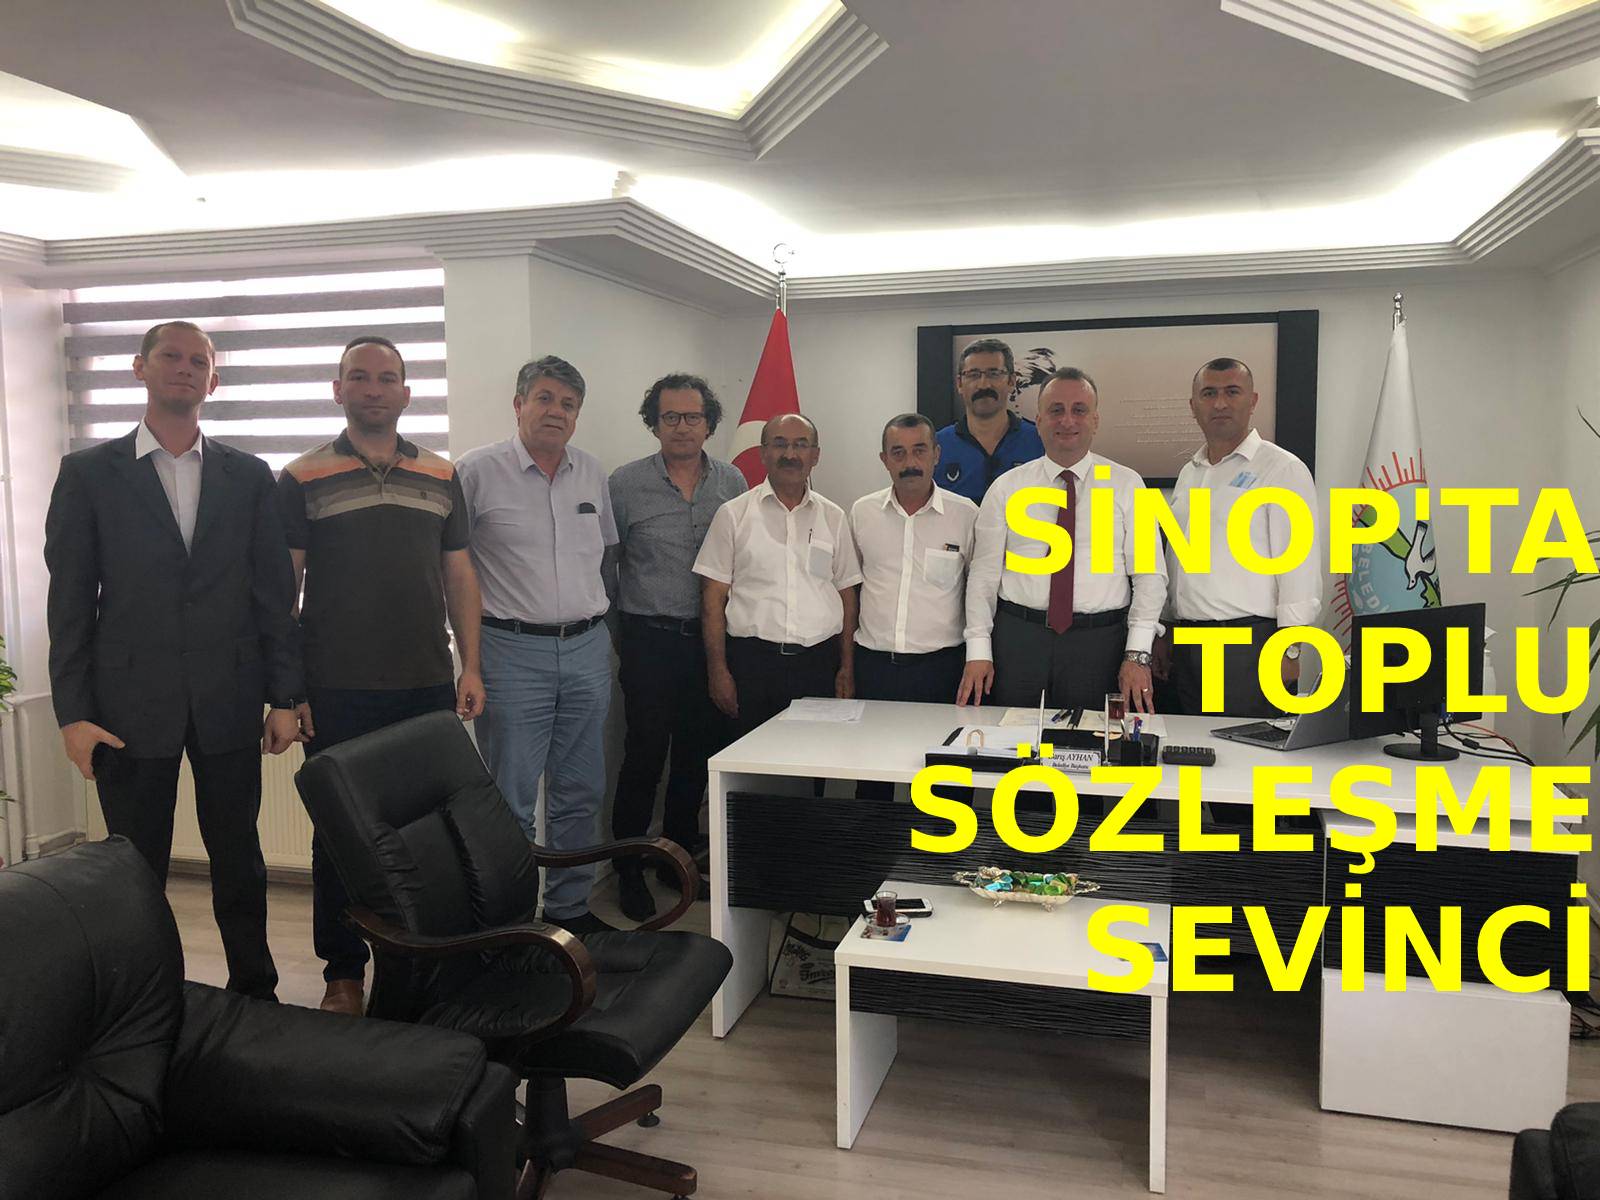 Sinop'ta toplu sözleşme sevinci